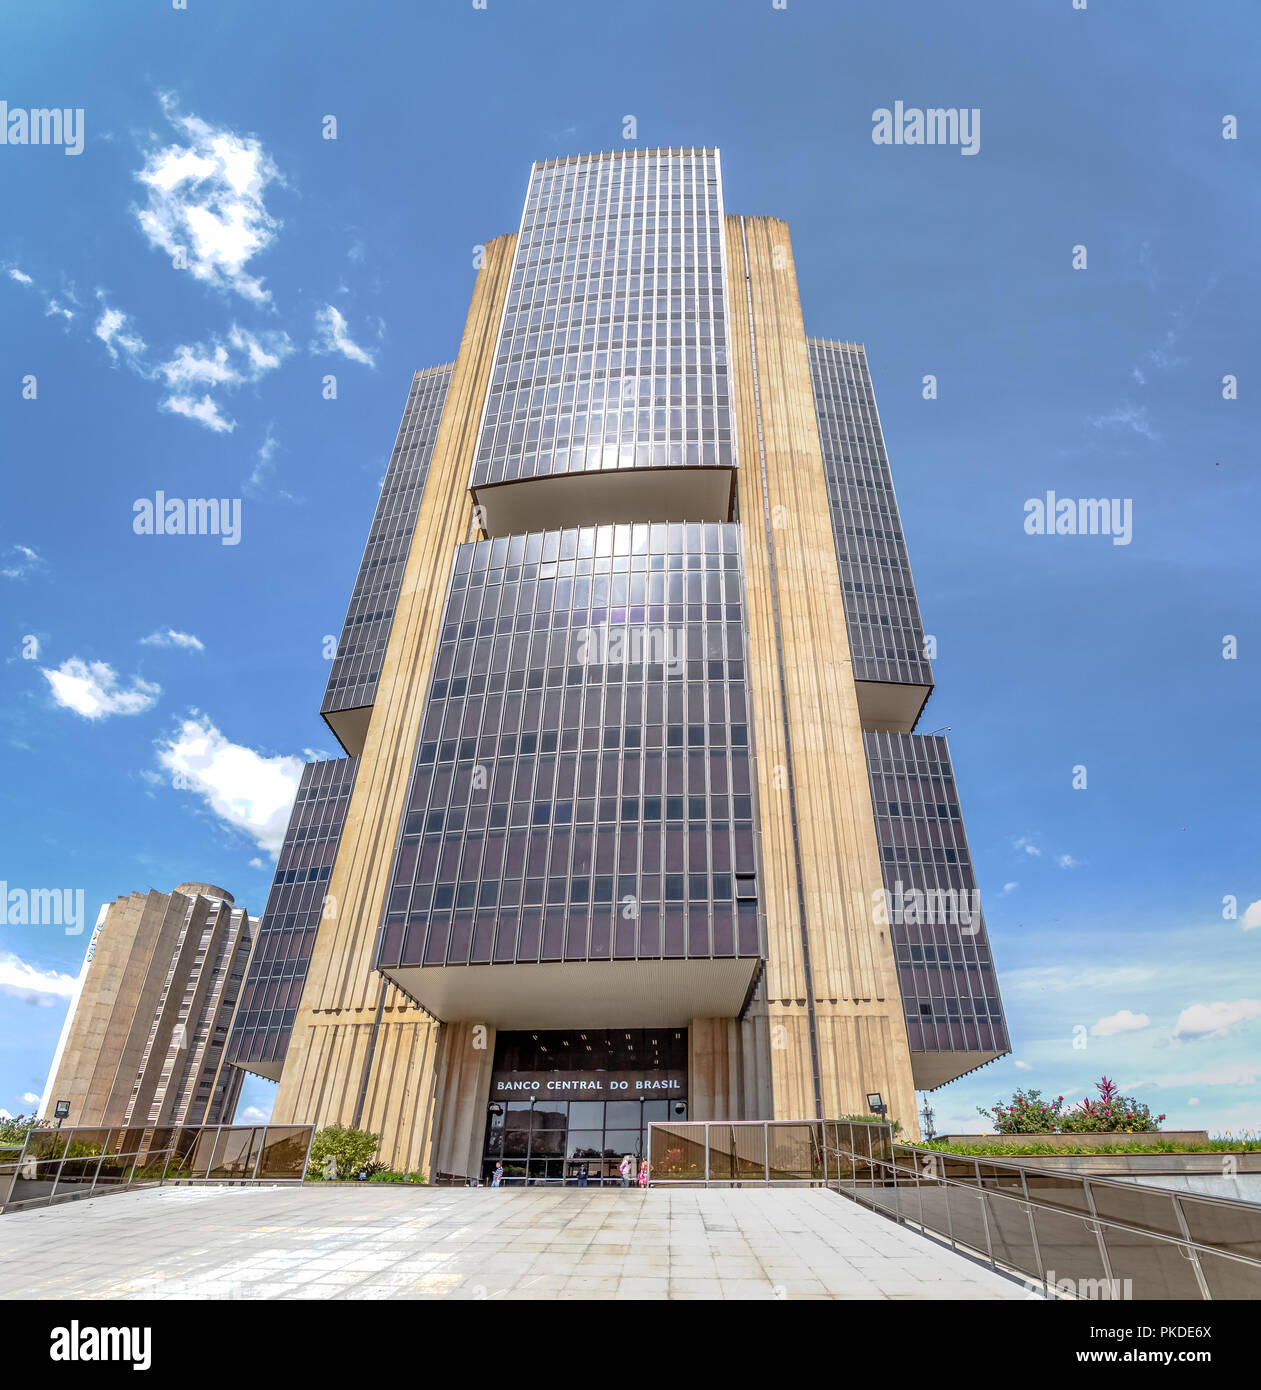 El Banco Central de Brasil - El edificio de la sede central de Brasilia, Distrito Federal, Brasil Foto de stock